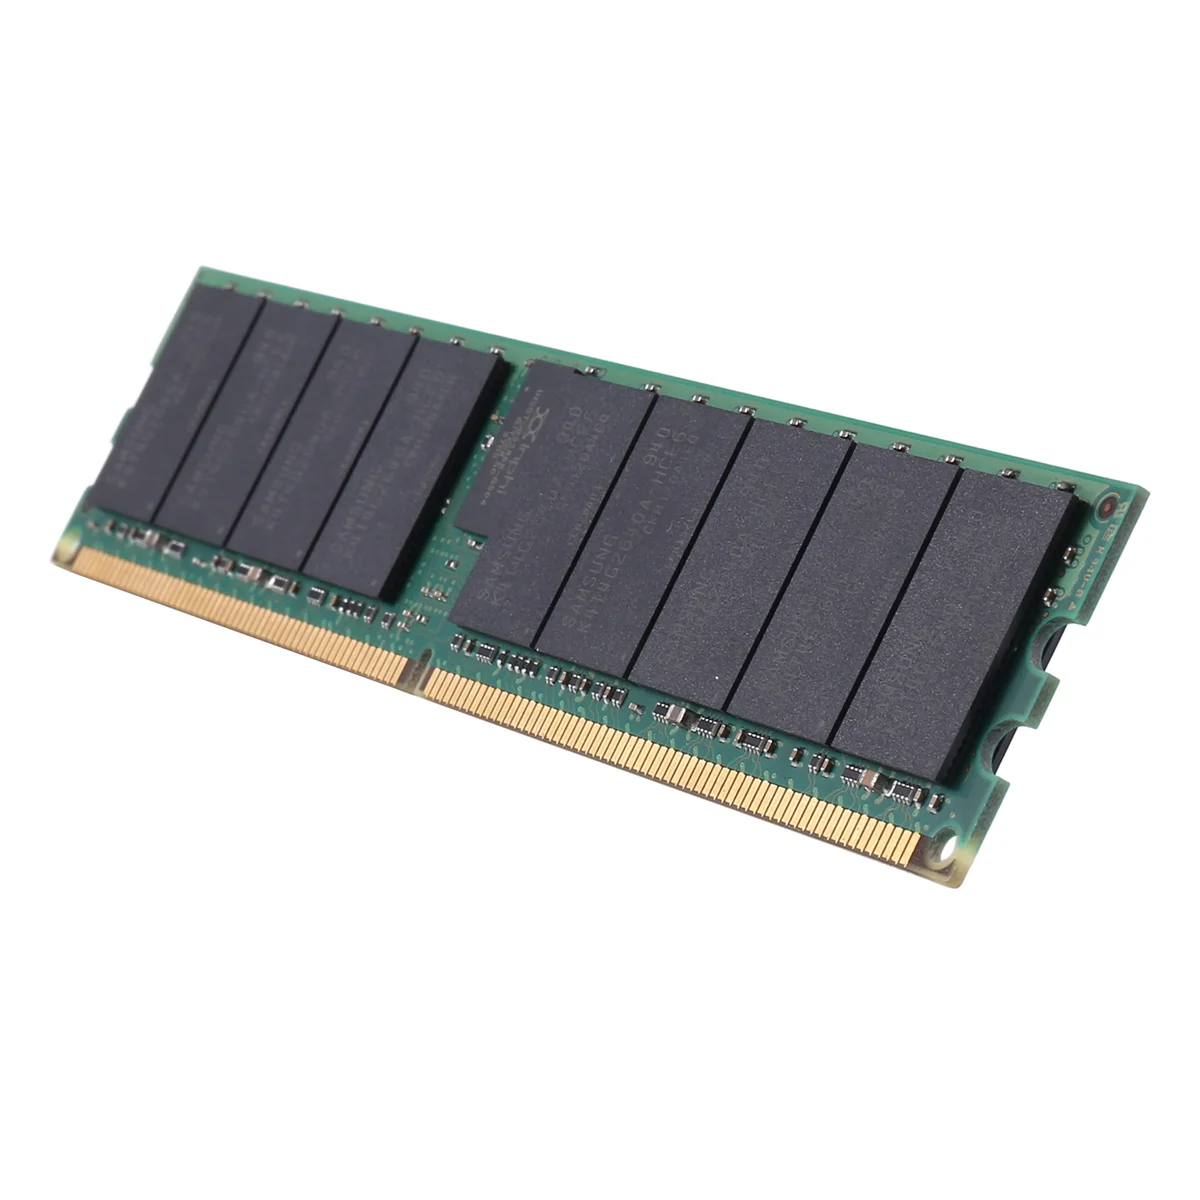 

Оперативная память DDR2 8 Гб 667 МГц RECC + охлаждающий жилет PC2 5300P 2RX4 REG ECC Серверная Память RAM для рабочих станций